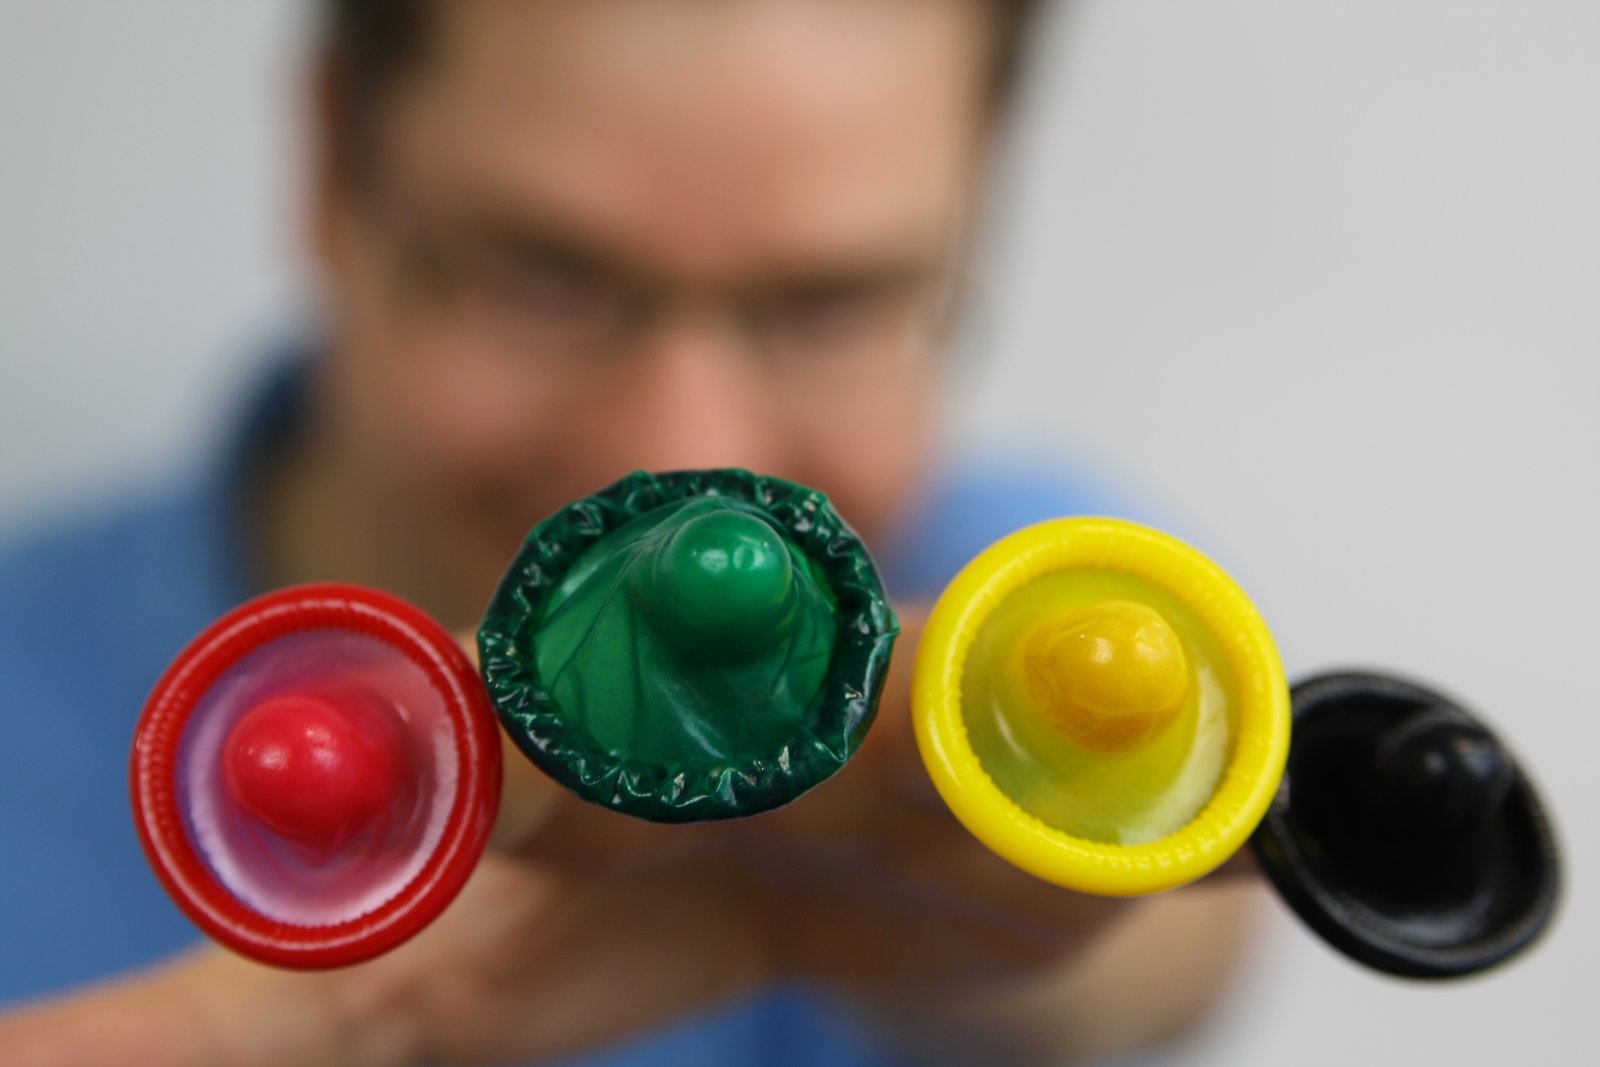 Jan Vinzenz Krause mit bunten Kondomen in rot, grün, gelb und schwarz